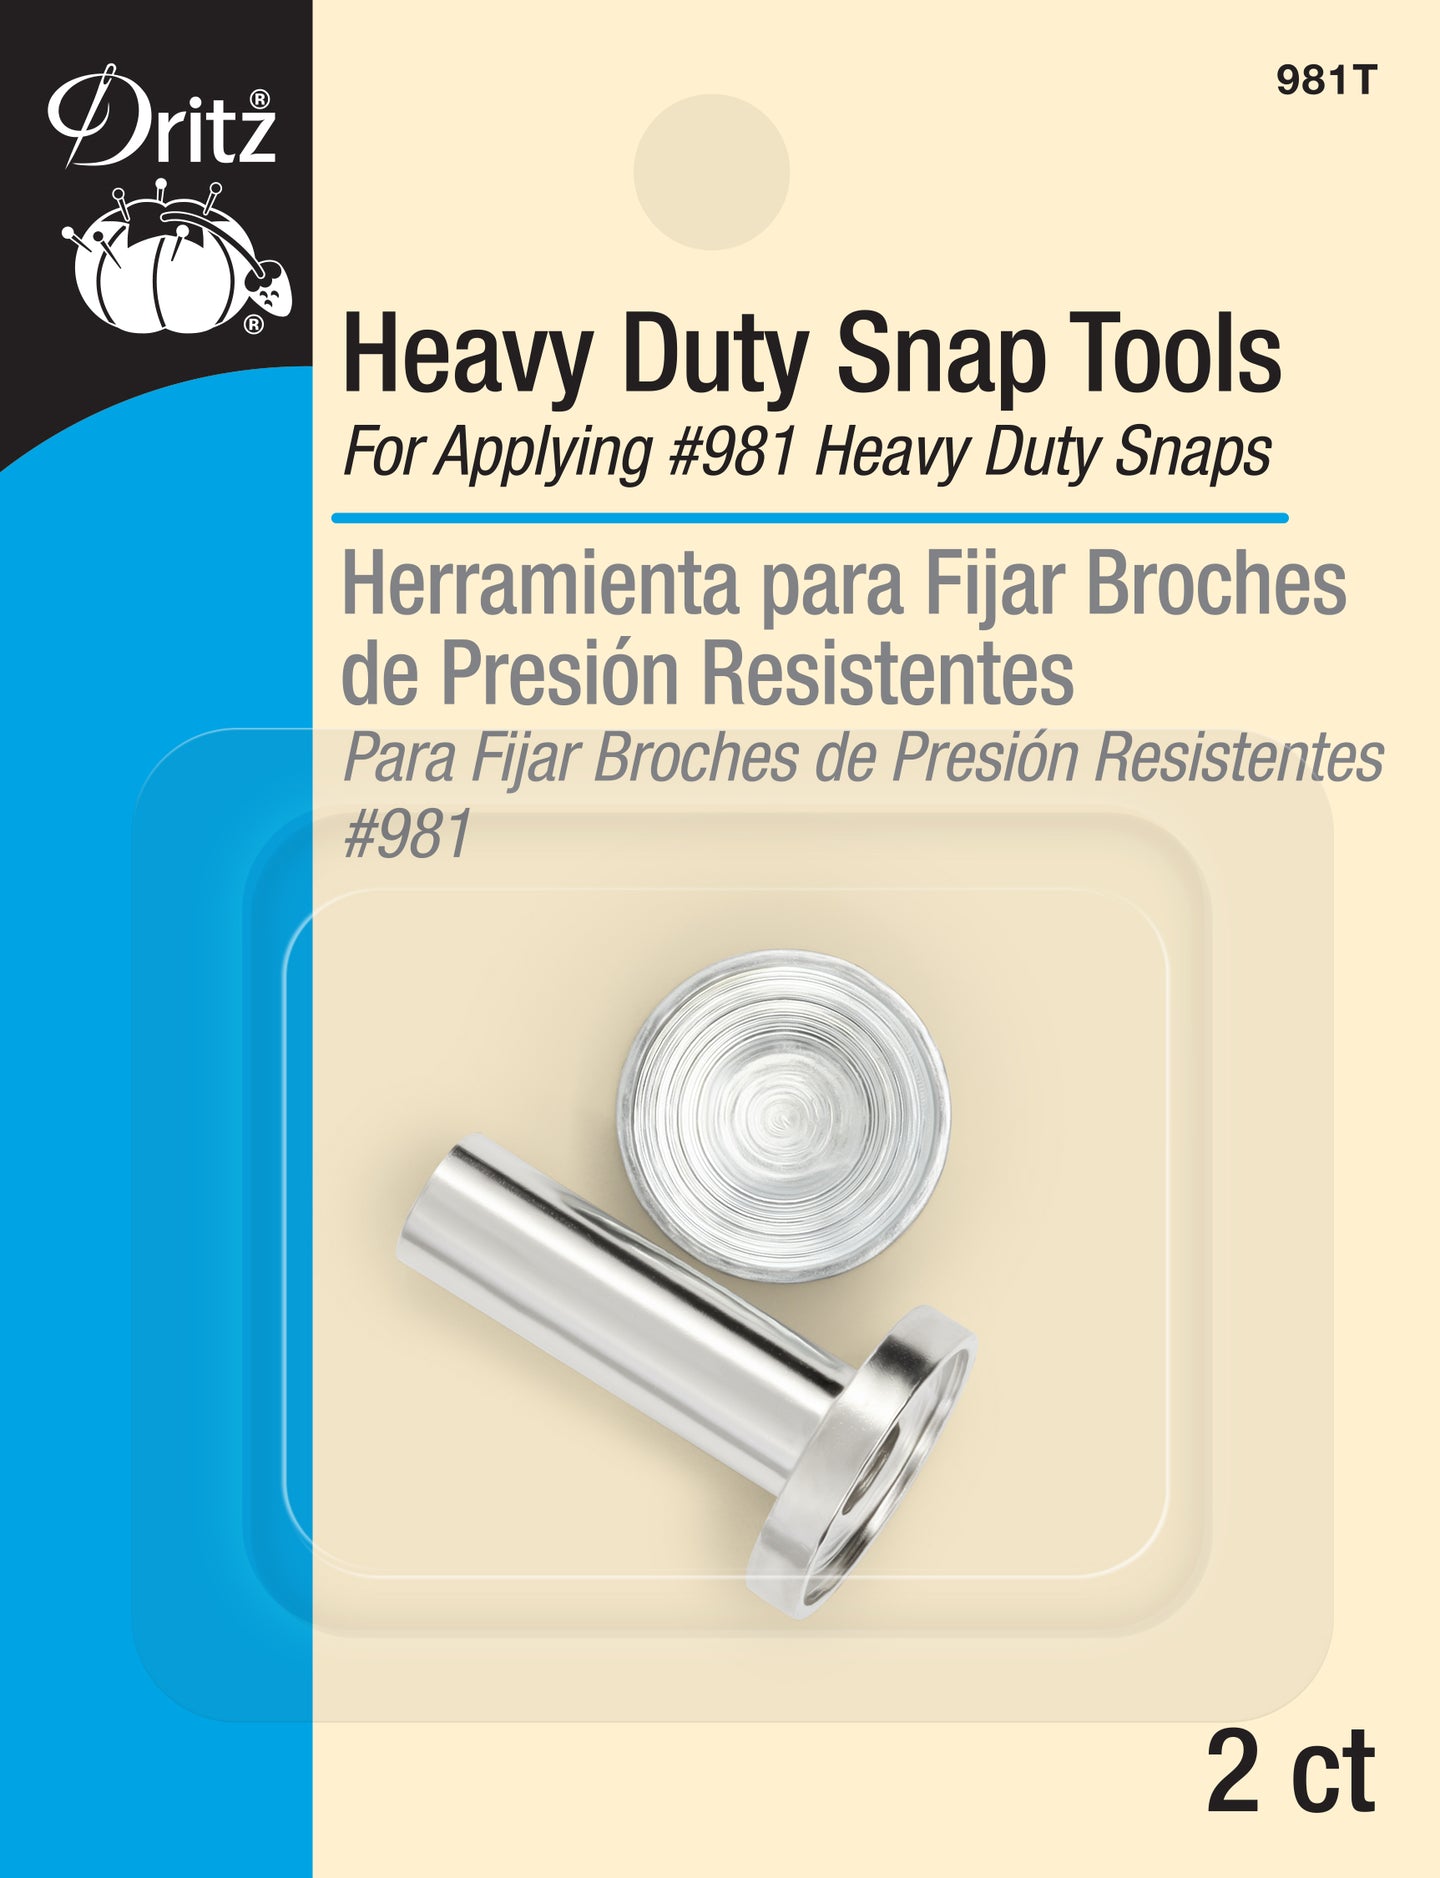 Dritz Heavy Duty Snap Tools for Heavy Duty Snaps